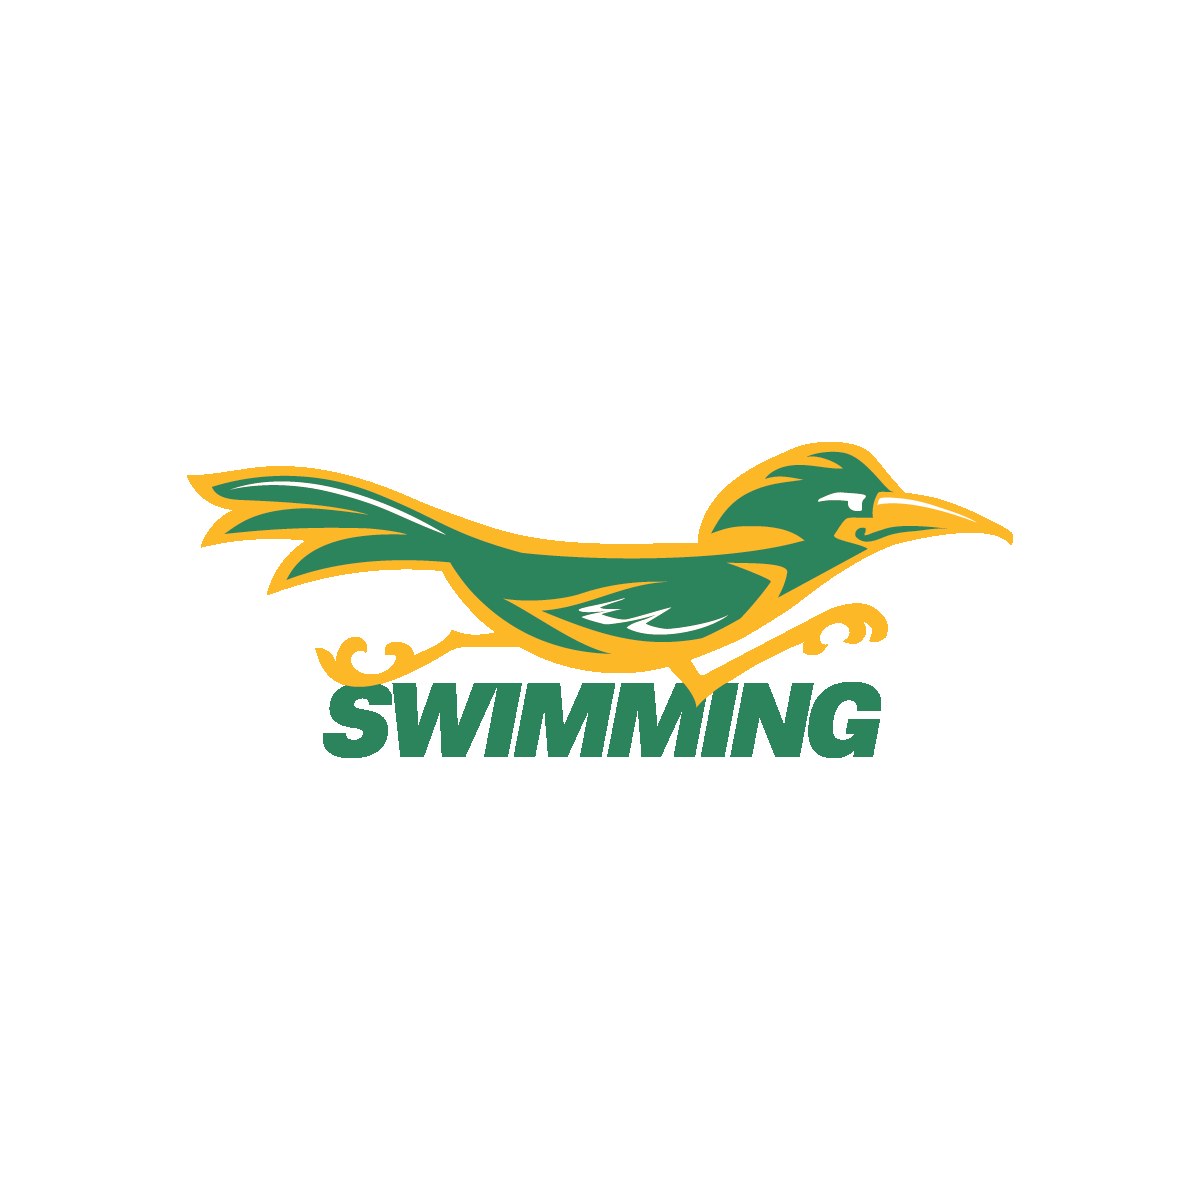 Swimming mascot - green text